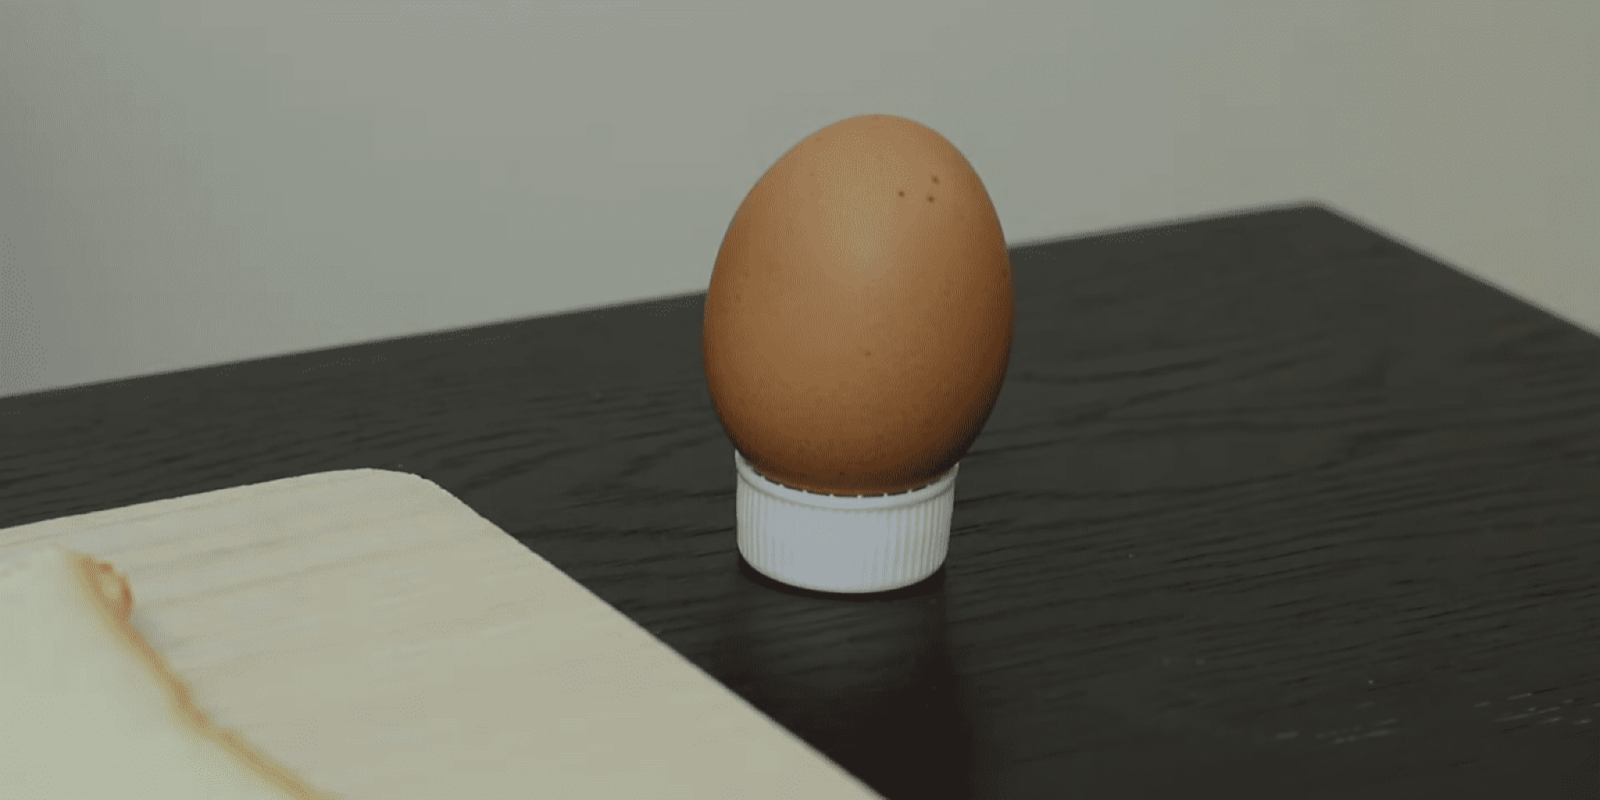 ペットボトルのフタの上に置いた卵